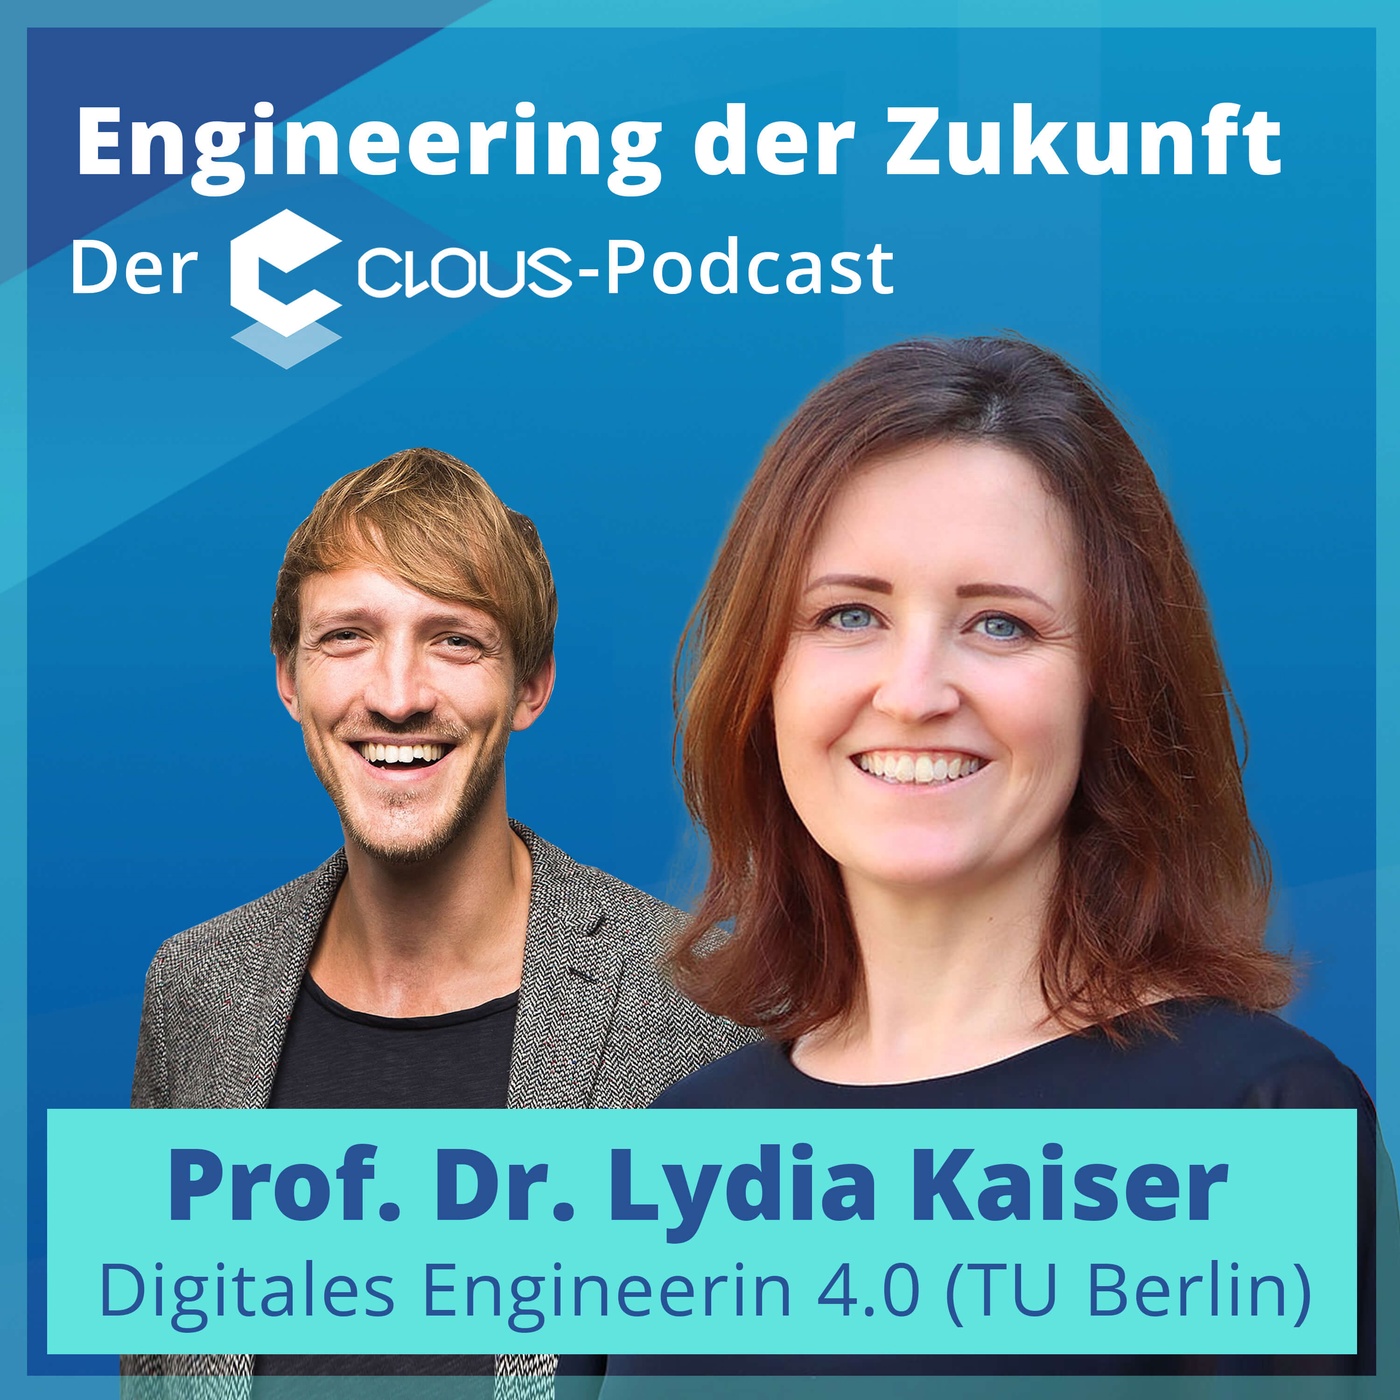 Zentrale Entwicklungen und Chancen des digitalen Engineerings (Prof. Dr. Lydia Kaiser)